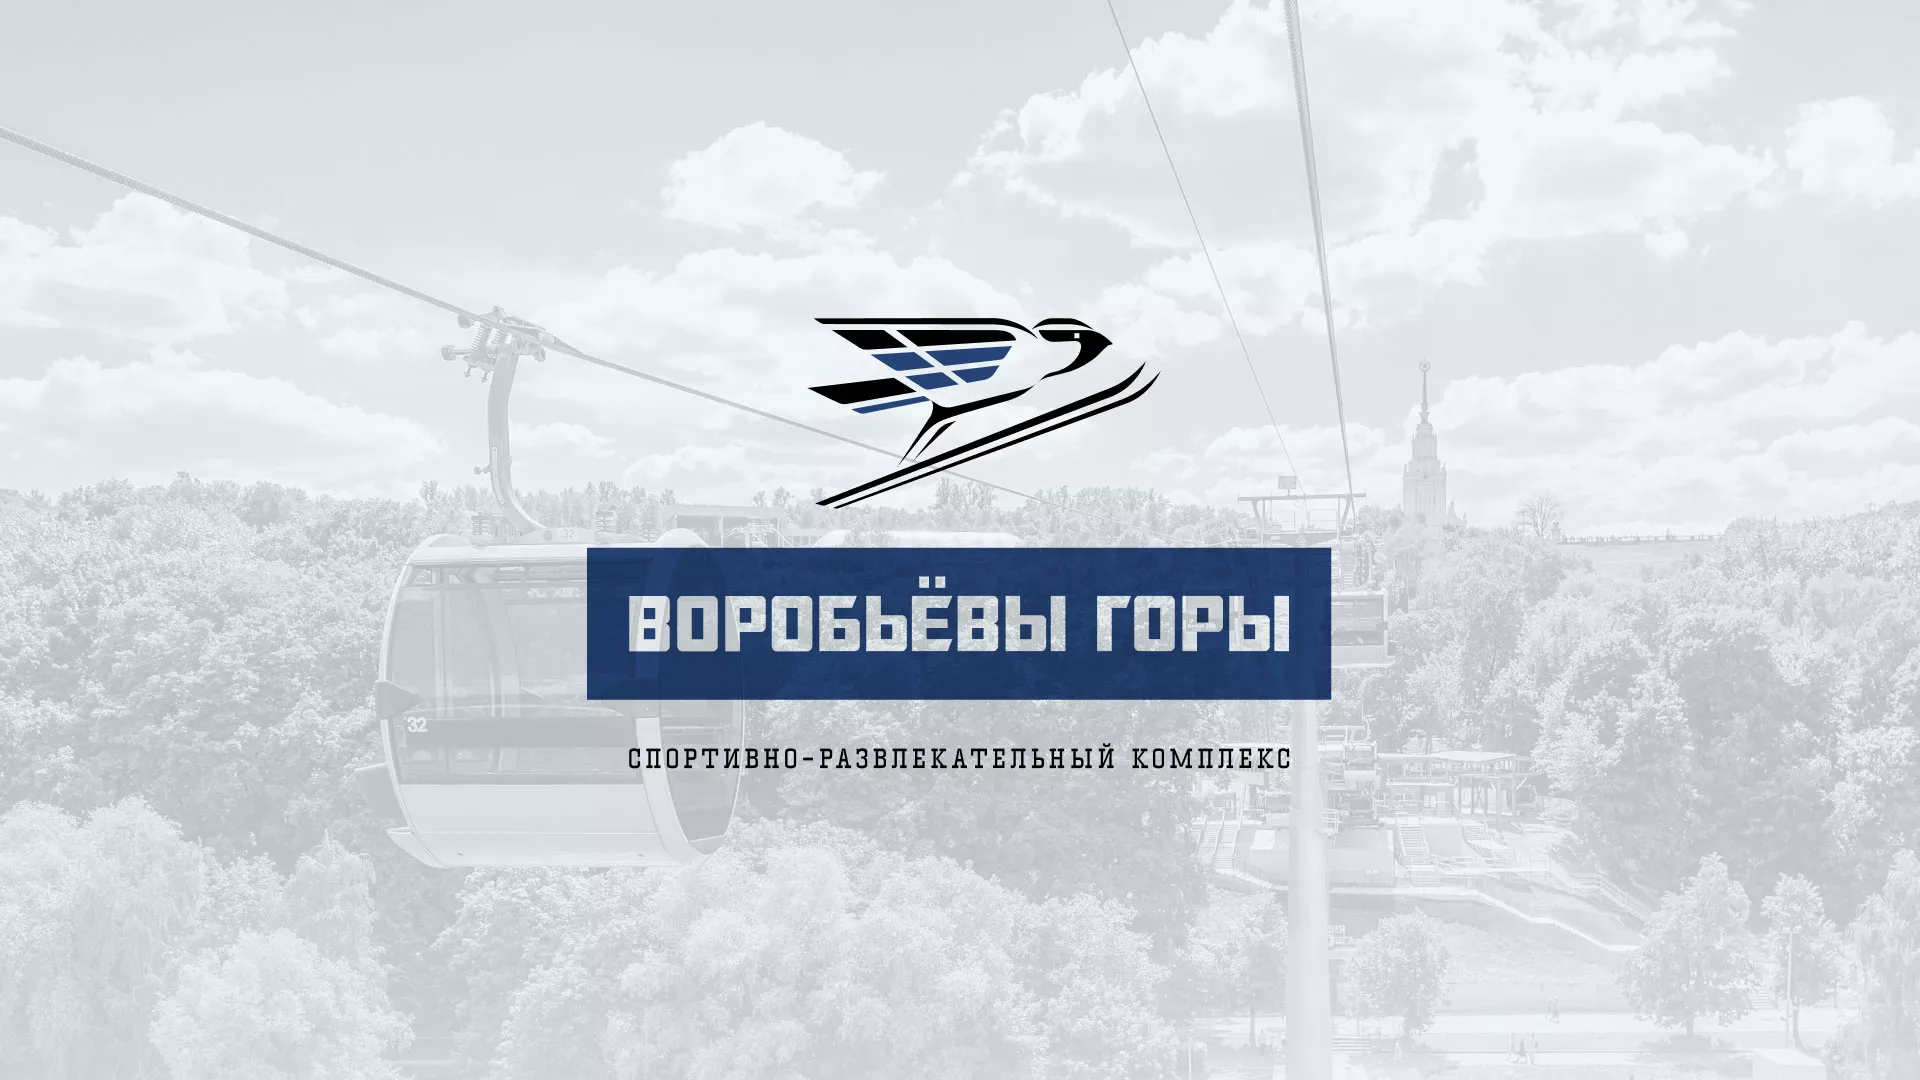 Разработка сайта в Омутнинске для спортивно-развлекательного комплекса «Воробьёвы горы»